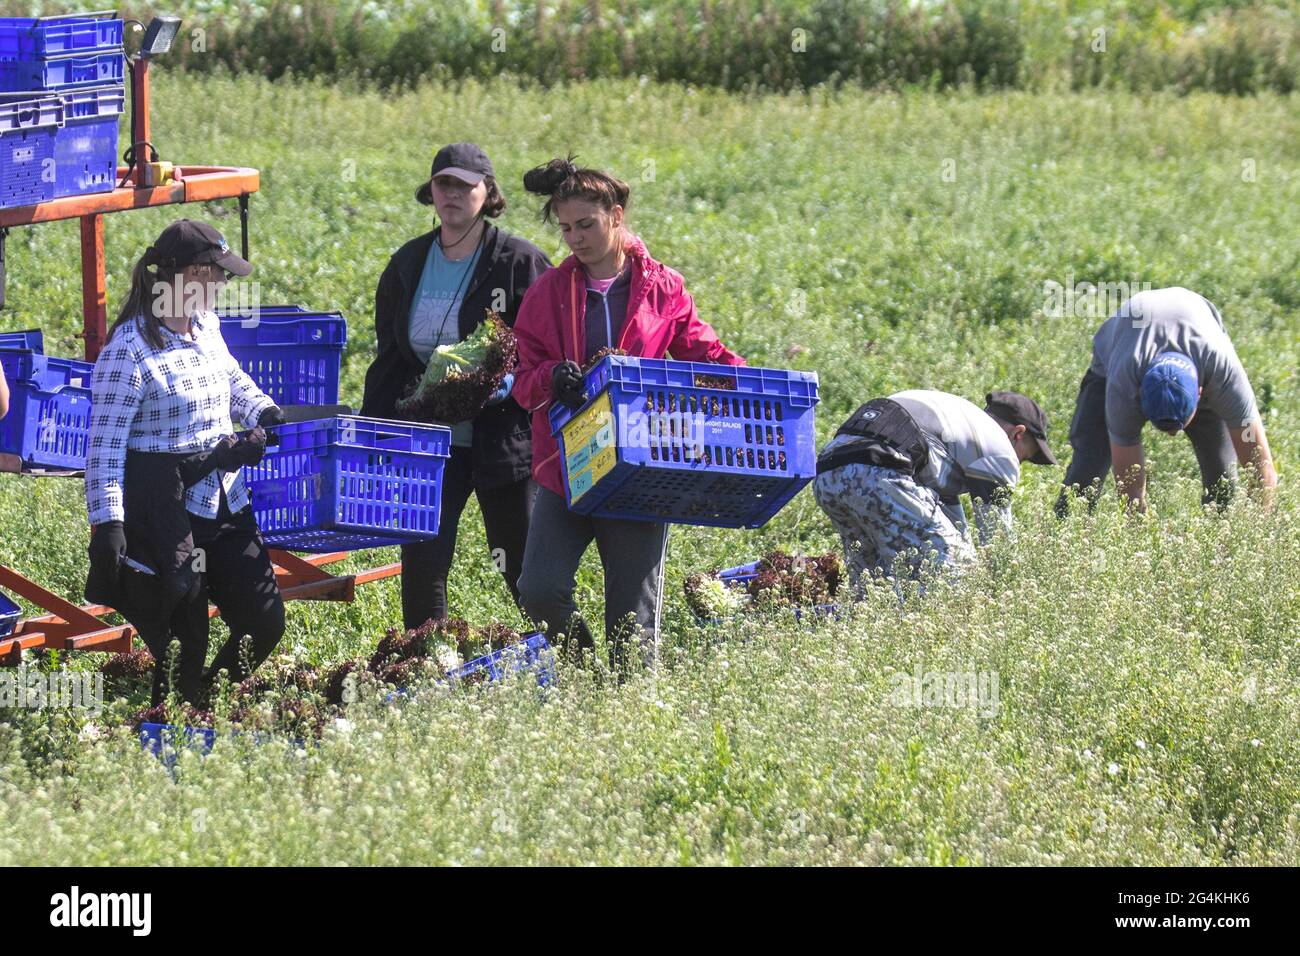 Tarleton, Lancashire. Météo au Royaume-Uni 22 juin 2021 ; les travailleurs migrants sur le terrain en provenance d'Ukraine commencent tôt le matin à récolter de la laitue rouge, car la demande des supermarchés pour les récoltes de salades est en hausse en raison de la chaleur persistante du temps. Les migrants ukrainiens constituent une énorme source de main-d'œuvre dans toute l'Europe, qui constitue le plus grand groupe de travailleurs migrants du continent. Les travailleurs migrants ukrainiens, dont beaucoup cherchent du travail en recrutant des entreprises, travaillent principalement dans des emplois à bas salaires dans des fermes de cueillette de fruits et de produits. Crédit MWI/AlamyLiveNews Banque D'Images